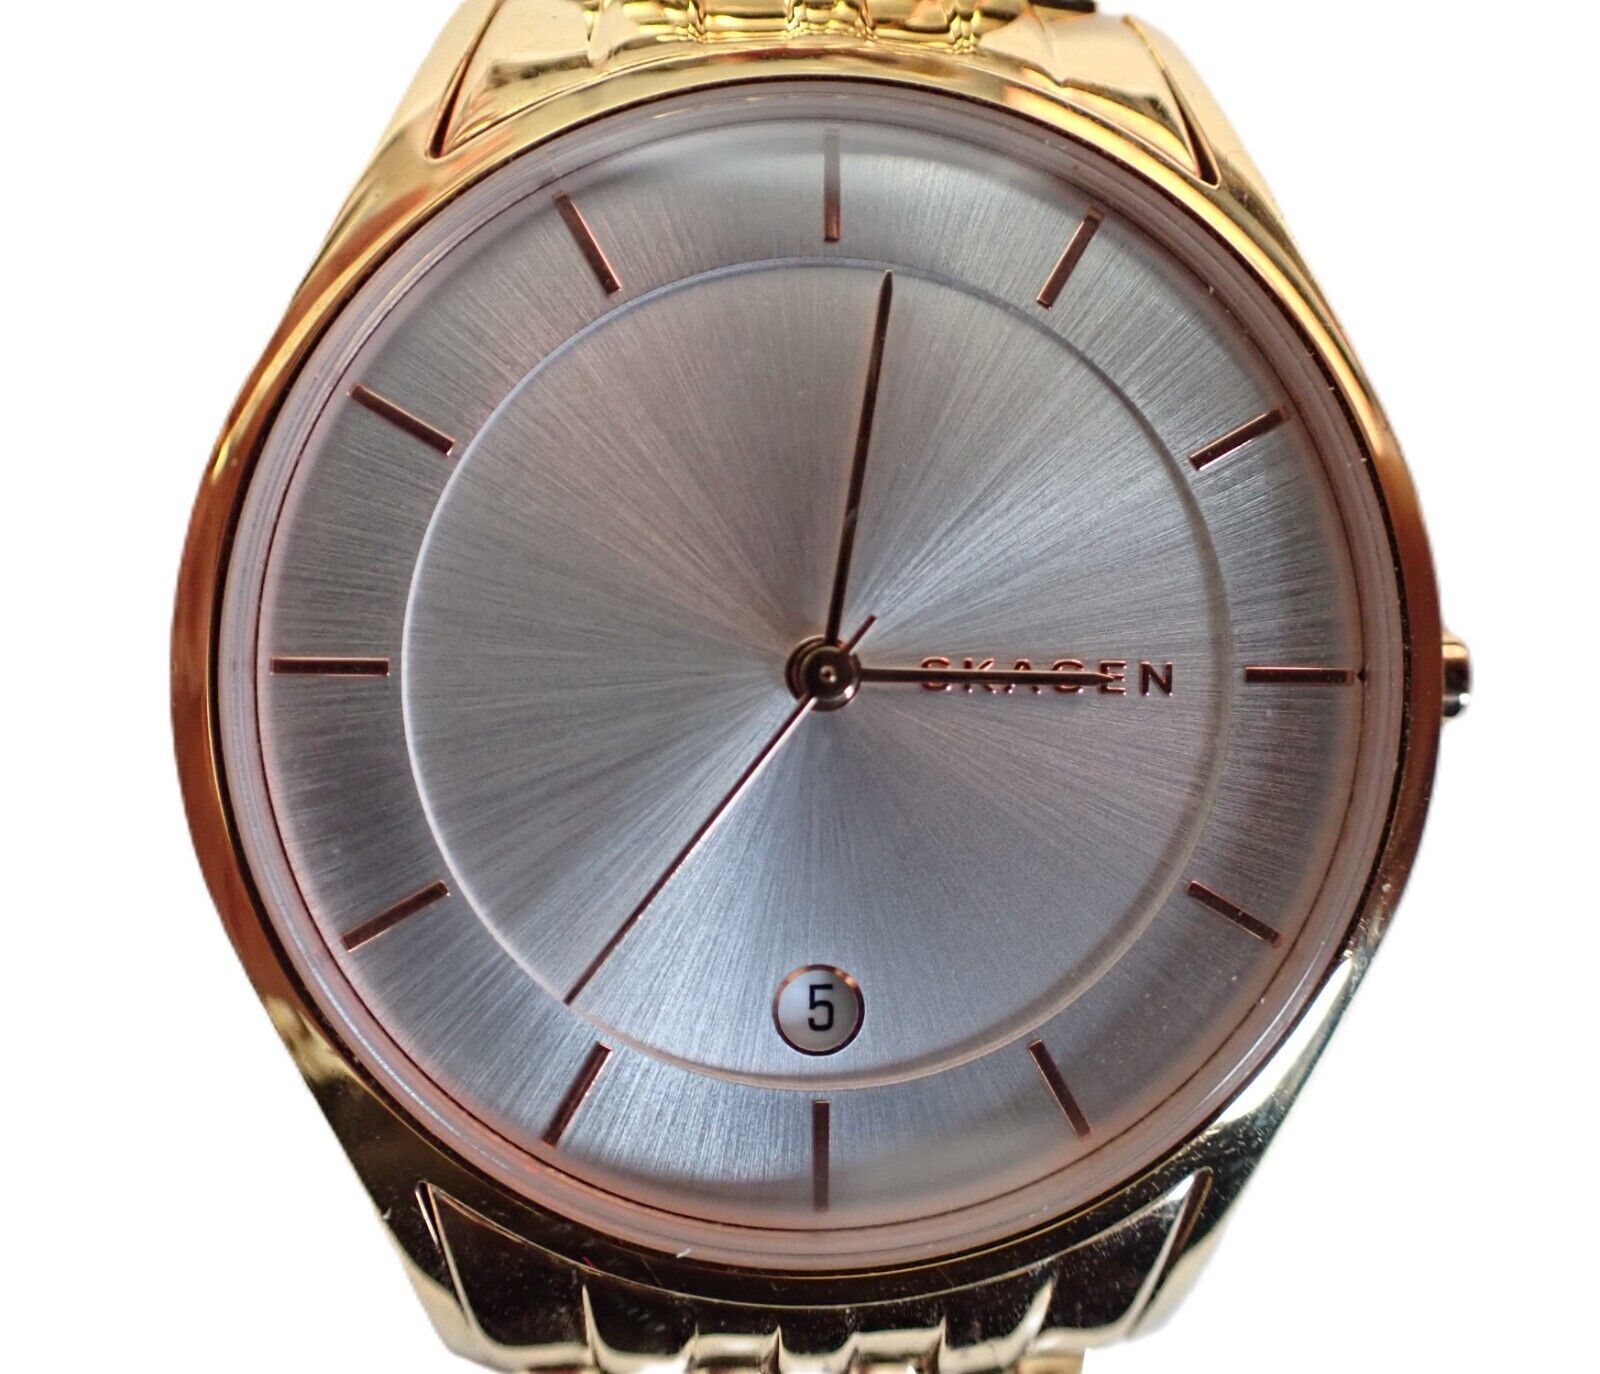 SKAGEN DENMARK Quartz Unisex Wristwatch - $29.21